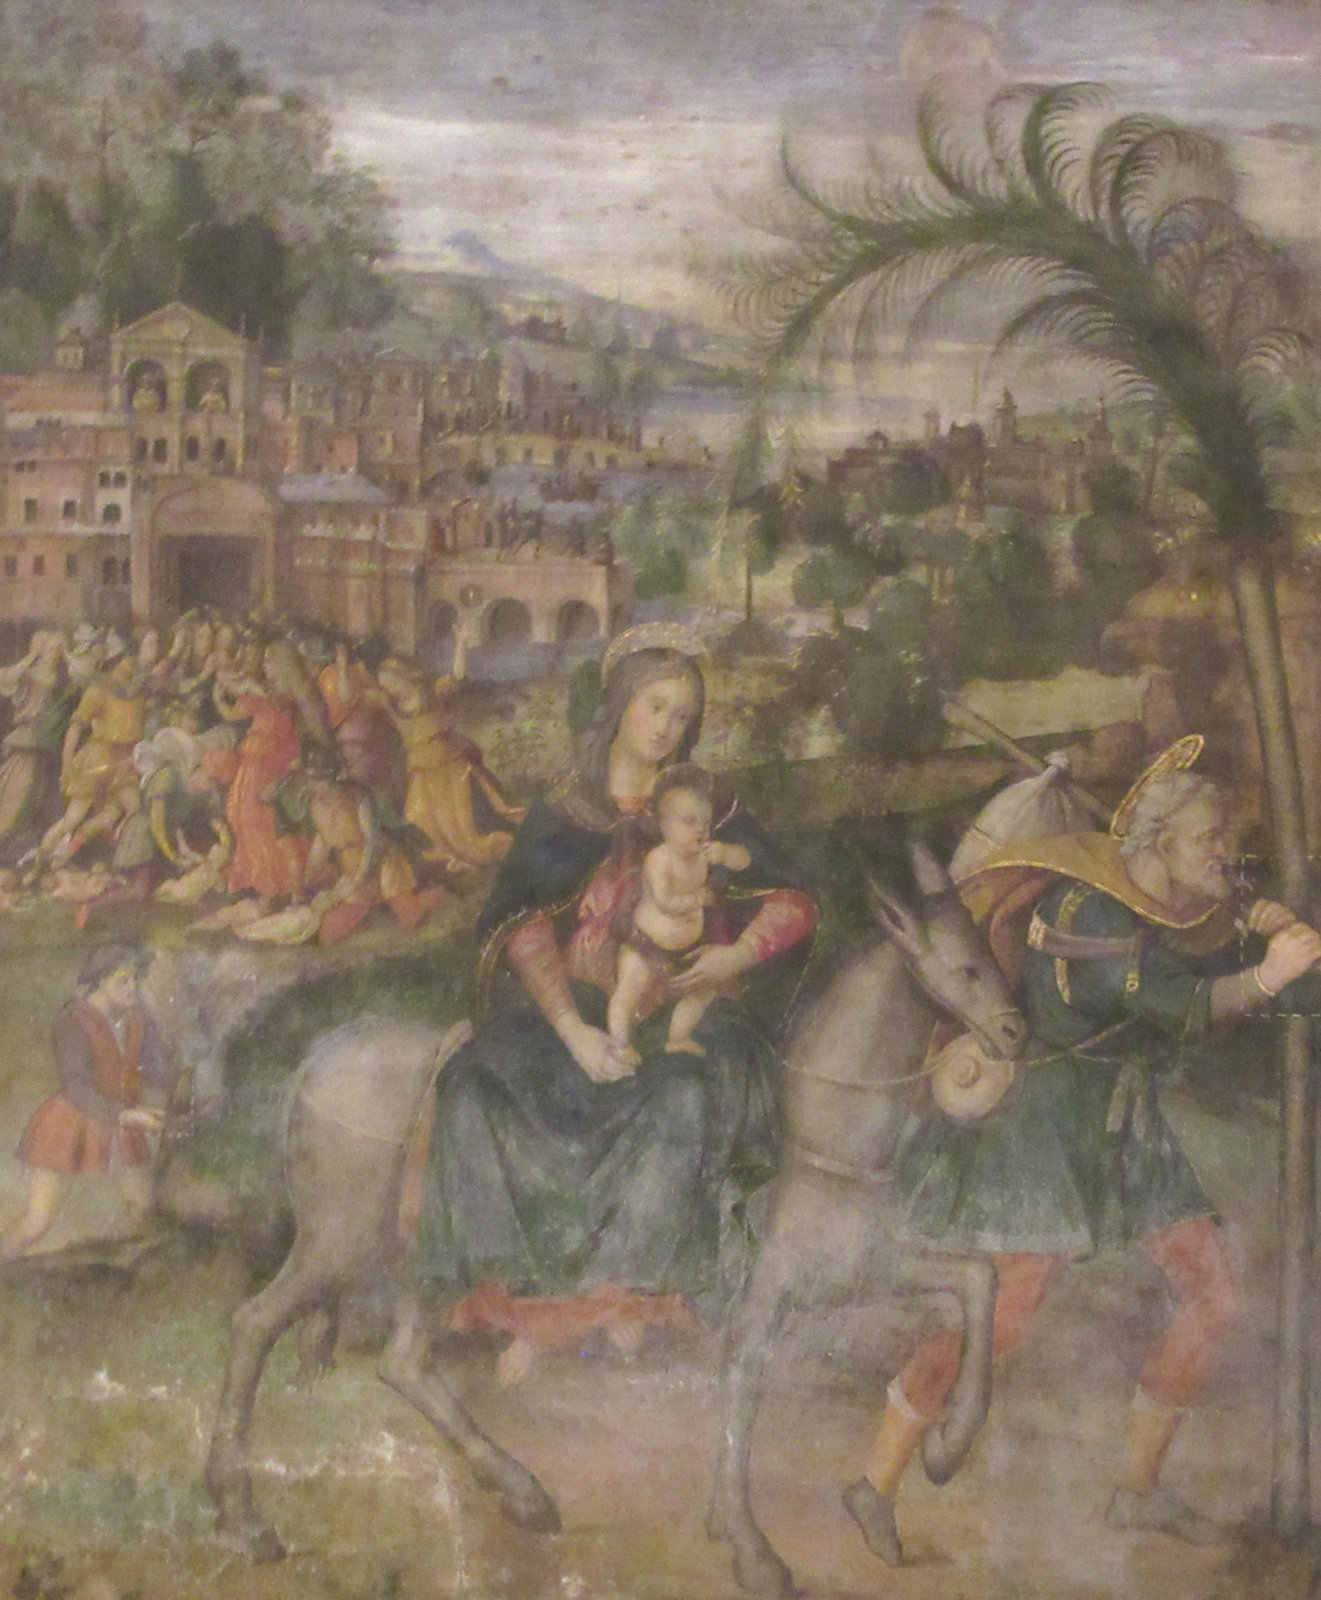 Baldassare Peruzzi (zugeschrieben): Flucht nach Ägypten, Fresko, um 1480, in der Hieronymus-Kapelle der Kirche S. Onofrio in Rom